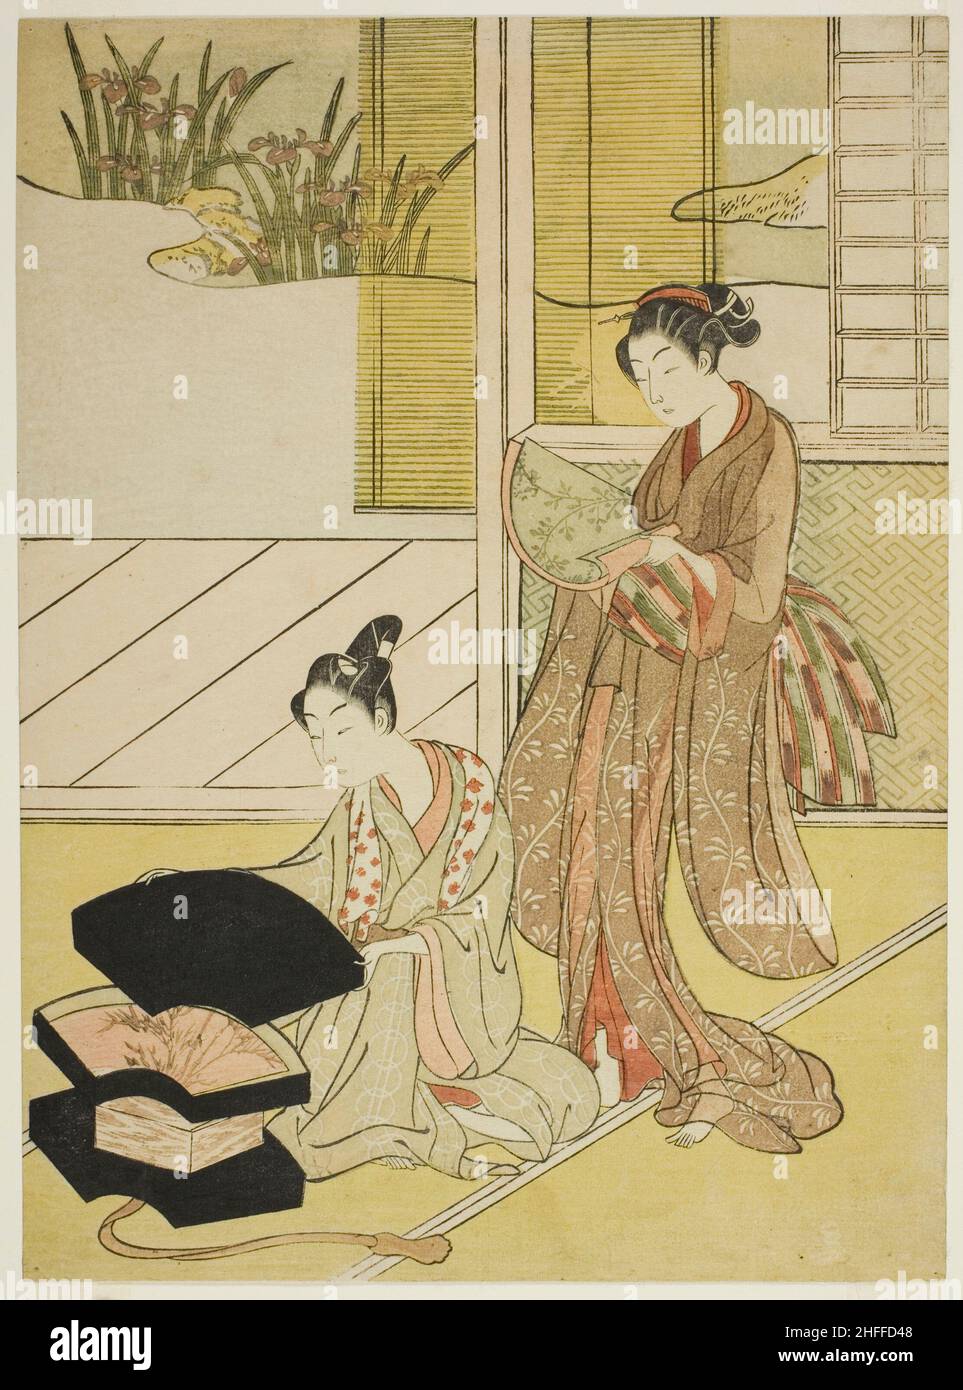 Ein Fan Peddler zeigt seine Waren einer jungen Frau, c. 1765/70. Wird Suzuki Harunobu zugeschrieben. Stockfoto